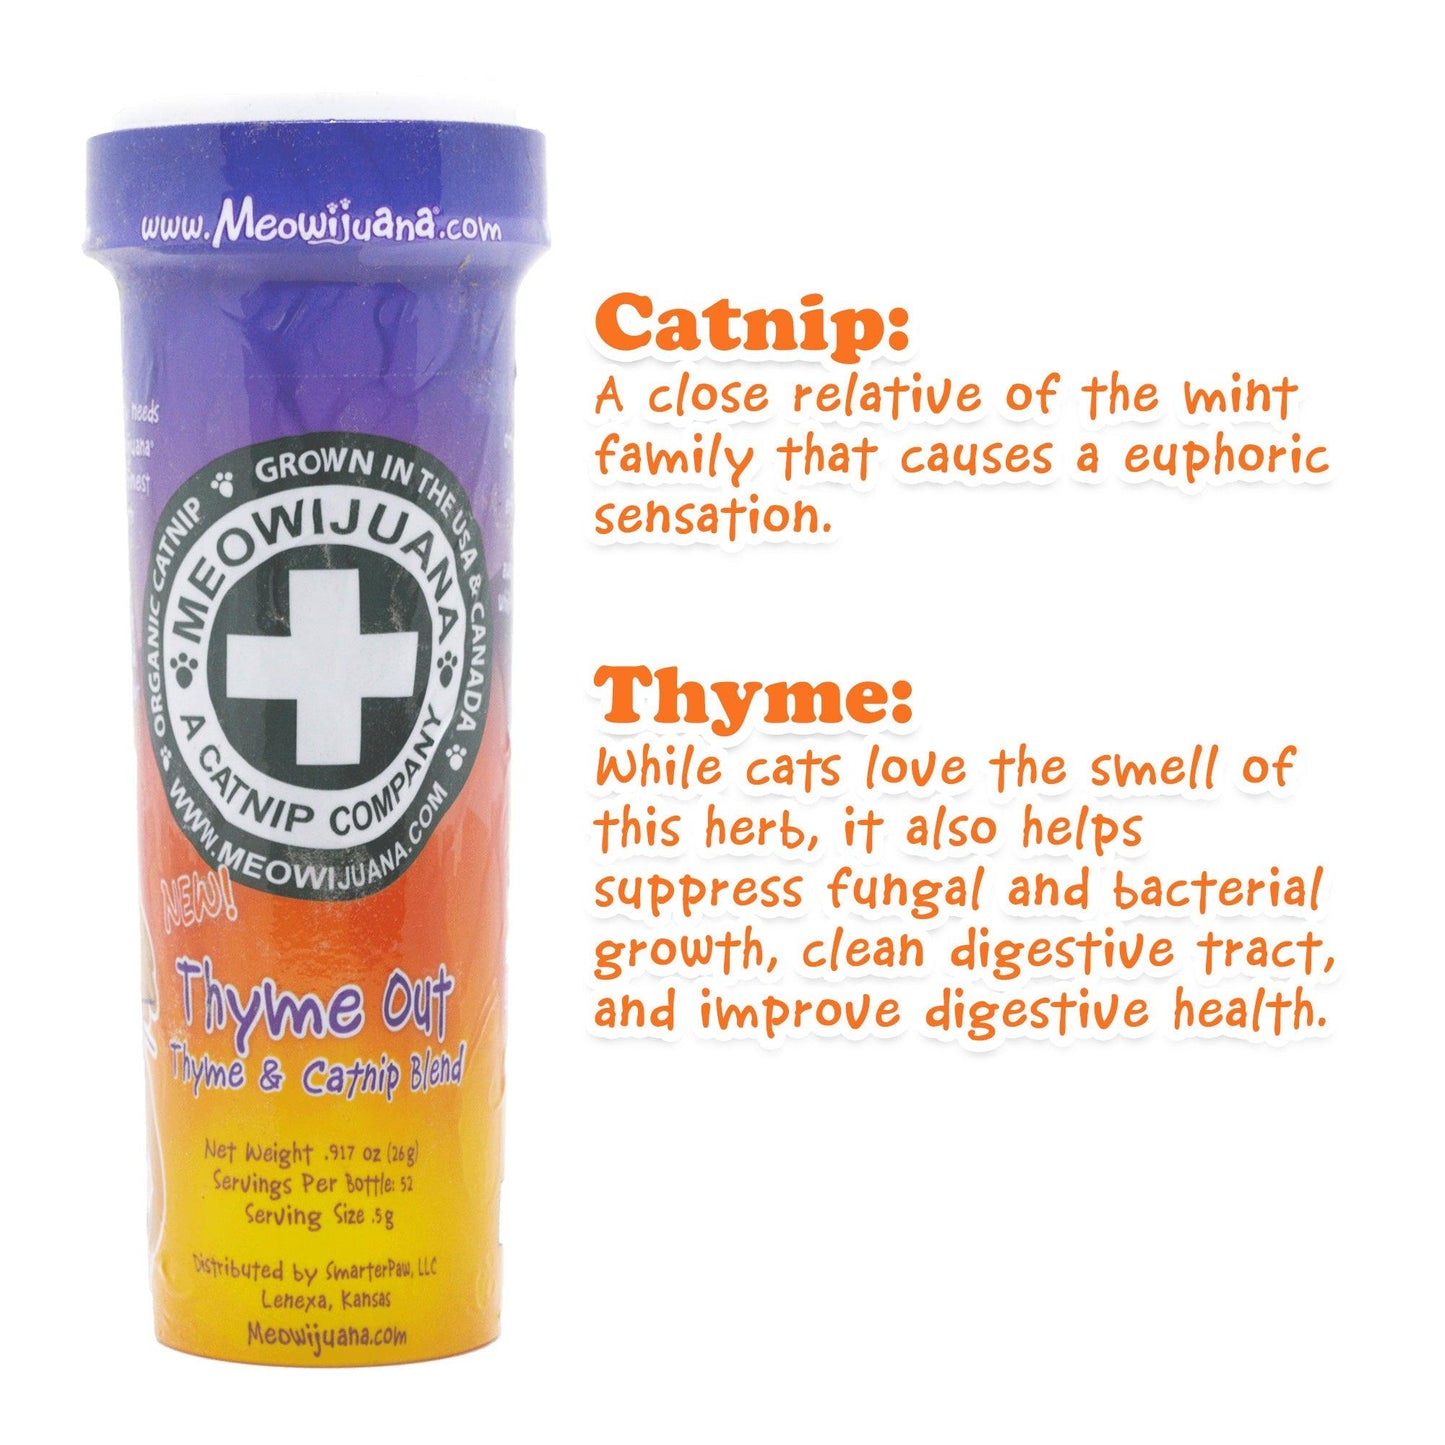 Thyme Out - Thyme & Catnip Blend - Meowijuana - A Catnip Company